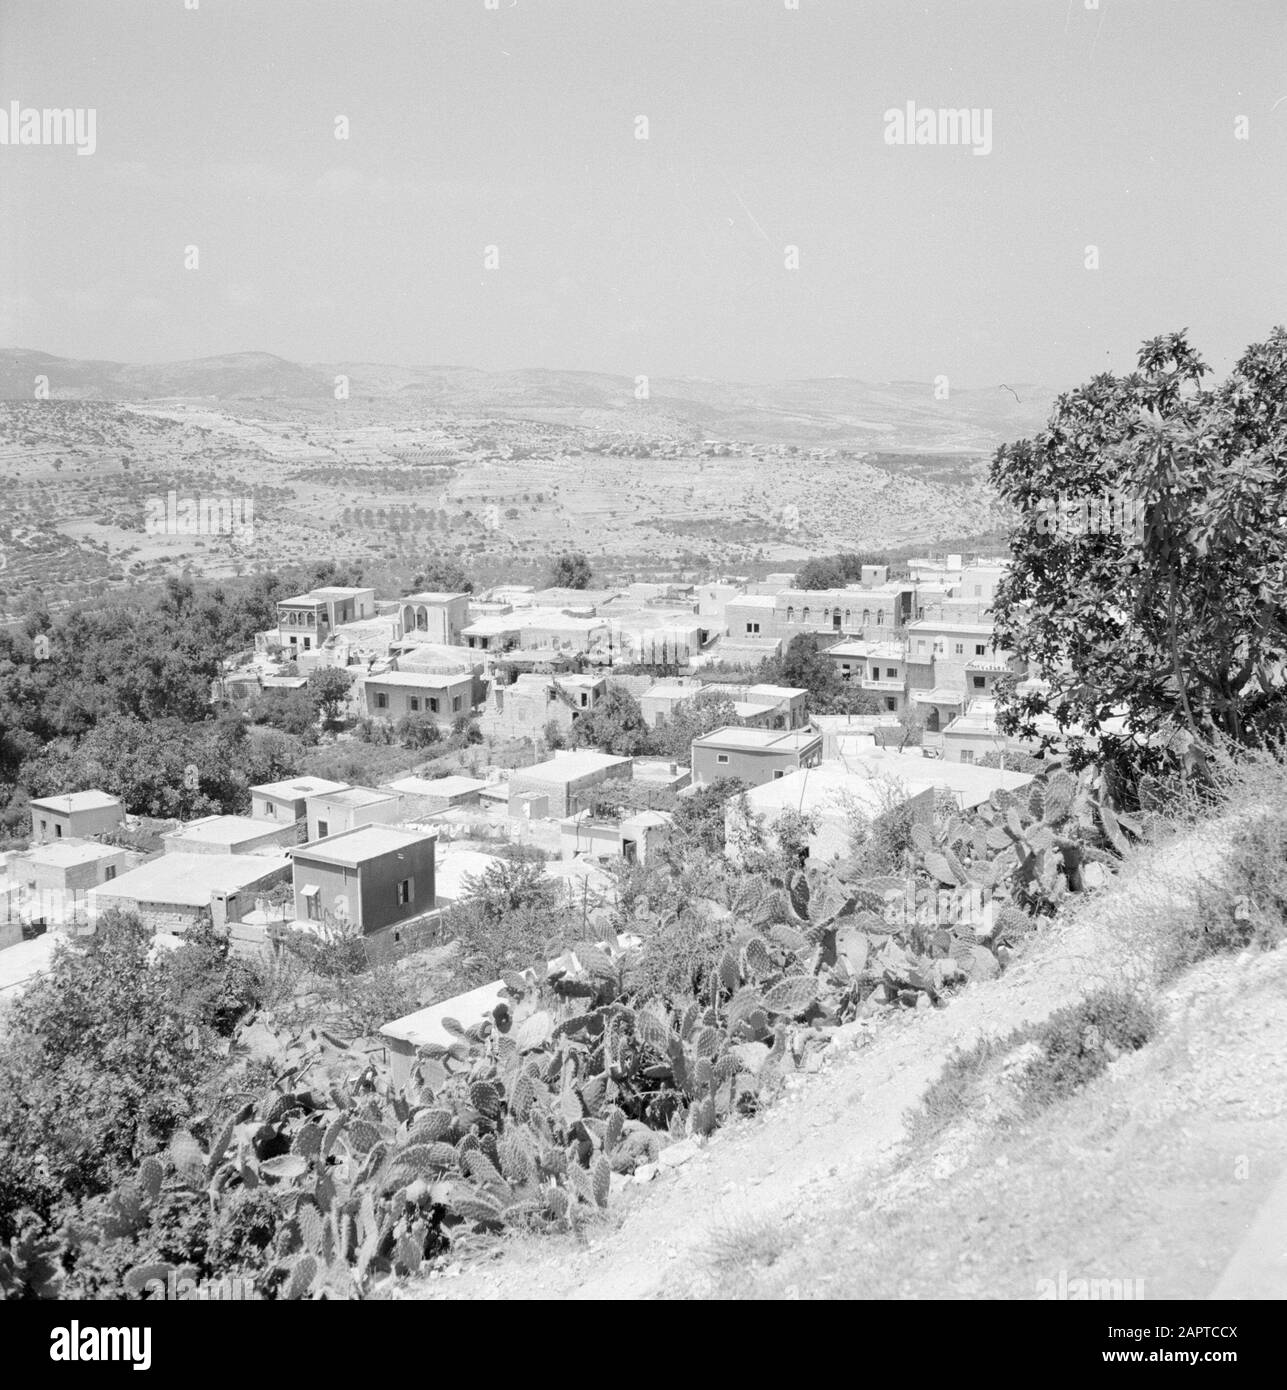 Blick auf das Dorf Peki'in in Toper Galiläa mit der umliegenden Hügellandschaft Datum: 1. Januar 1963 Lage: Galiläa, Israel, Peki'in Schlüsselwörter: Architektur, Dörfer, Hügel, Panoramas Stockfoto